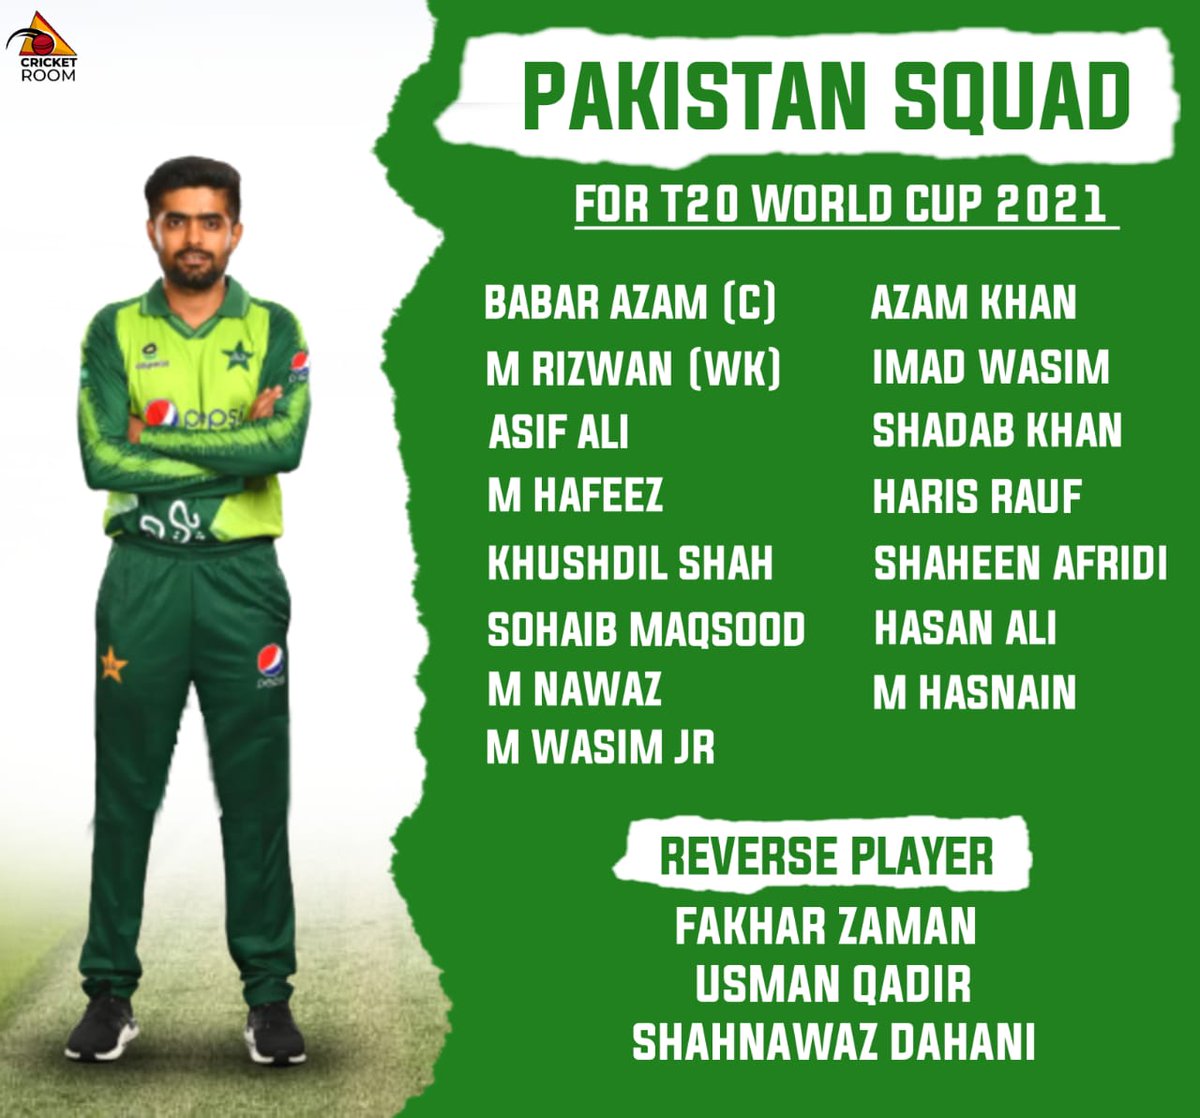 World 2021 squad pakistan cup t20 Men's T20